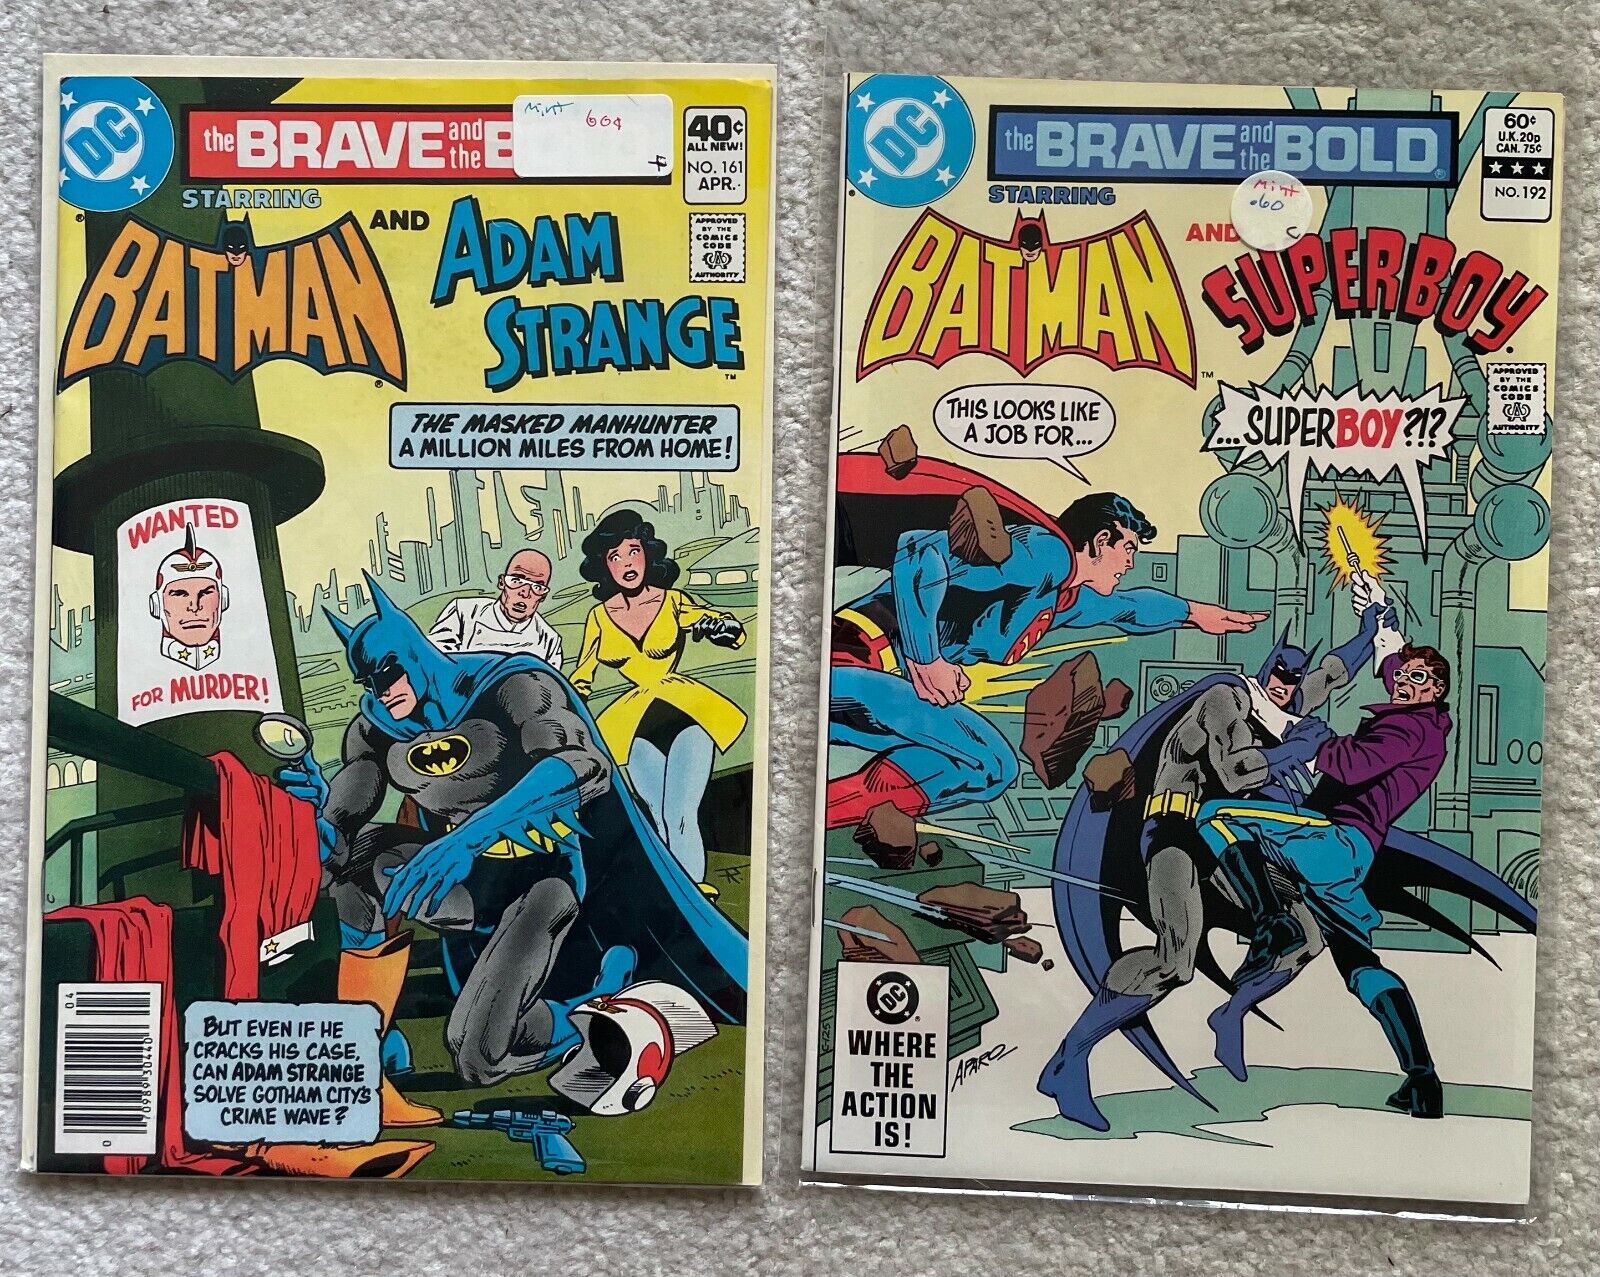 THE BRAVE AND THE BOLD #161 Batman Adam Strange #192 Batman Superboy vs. Mr. I.Q